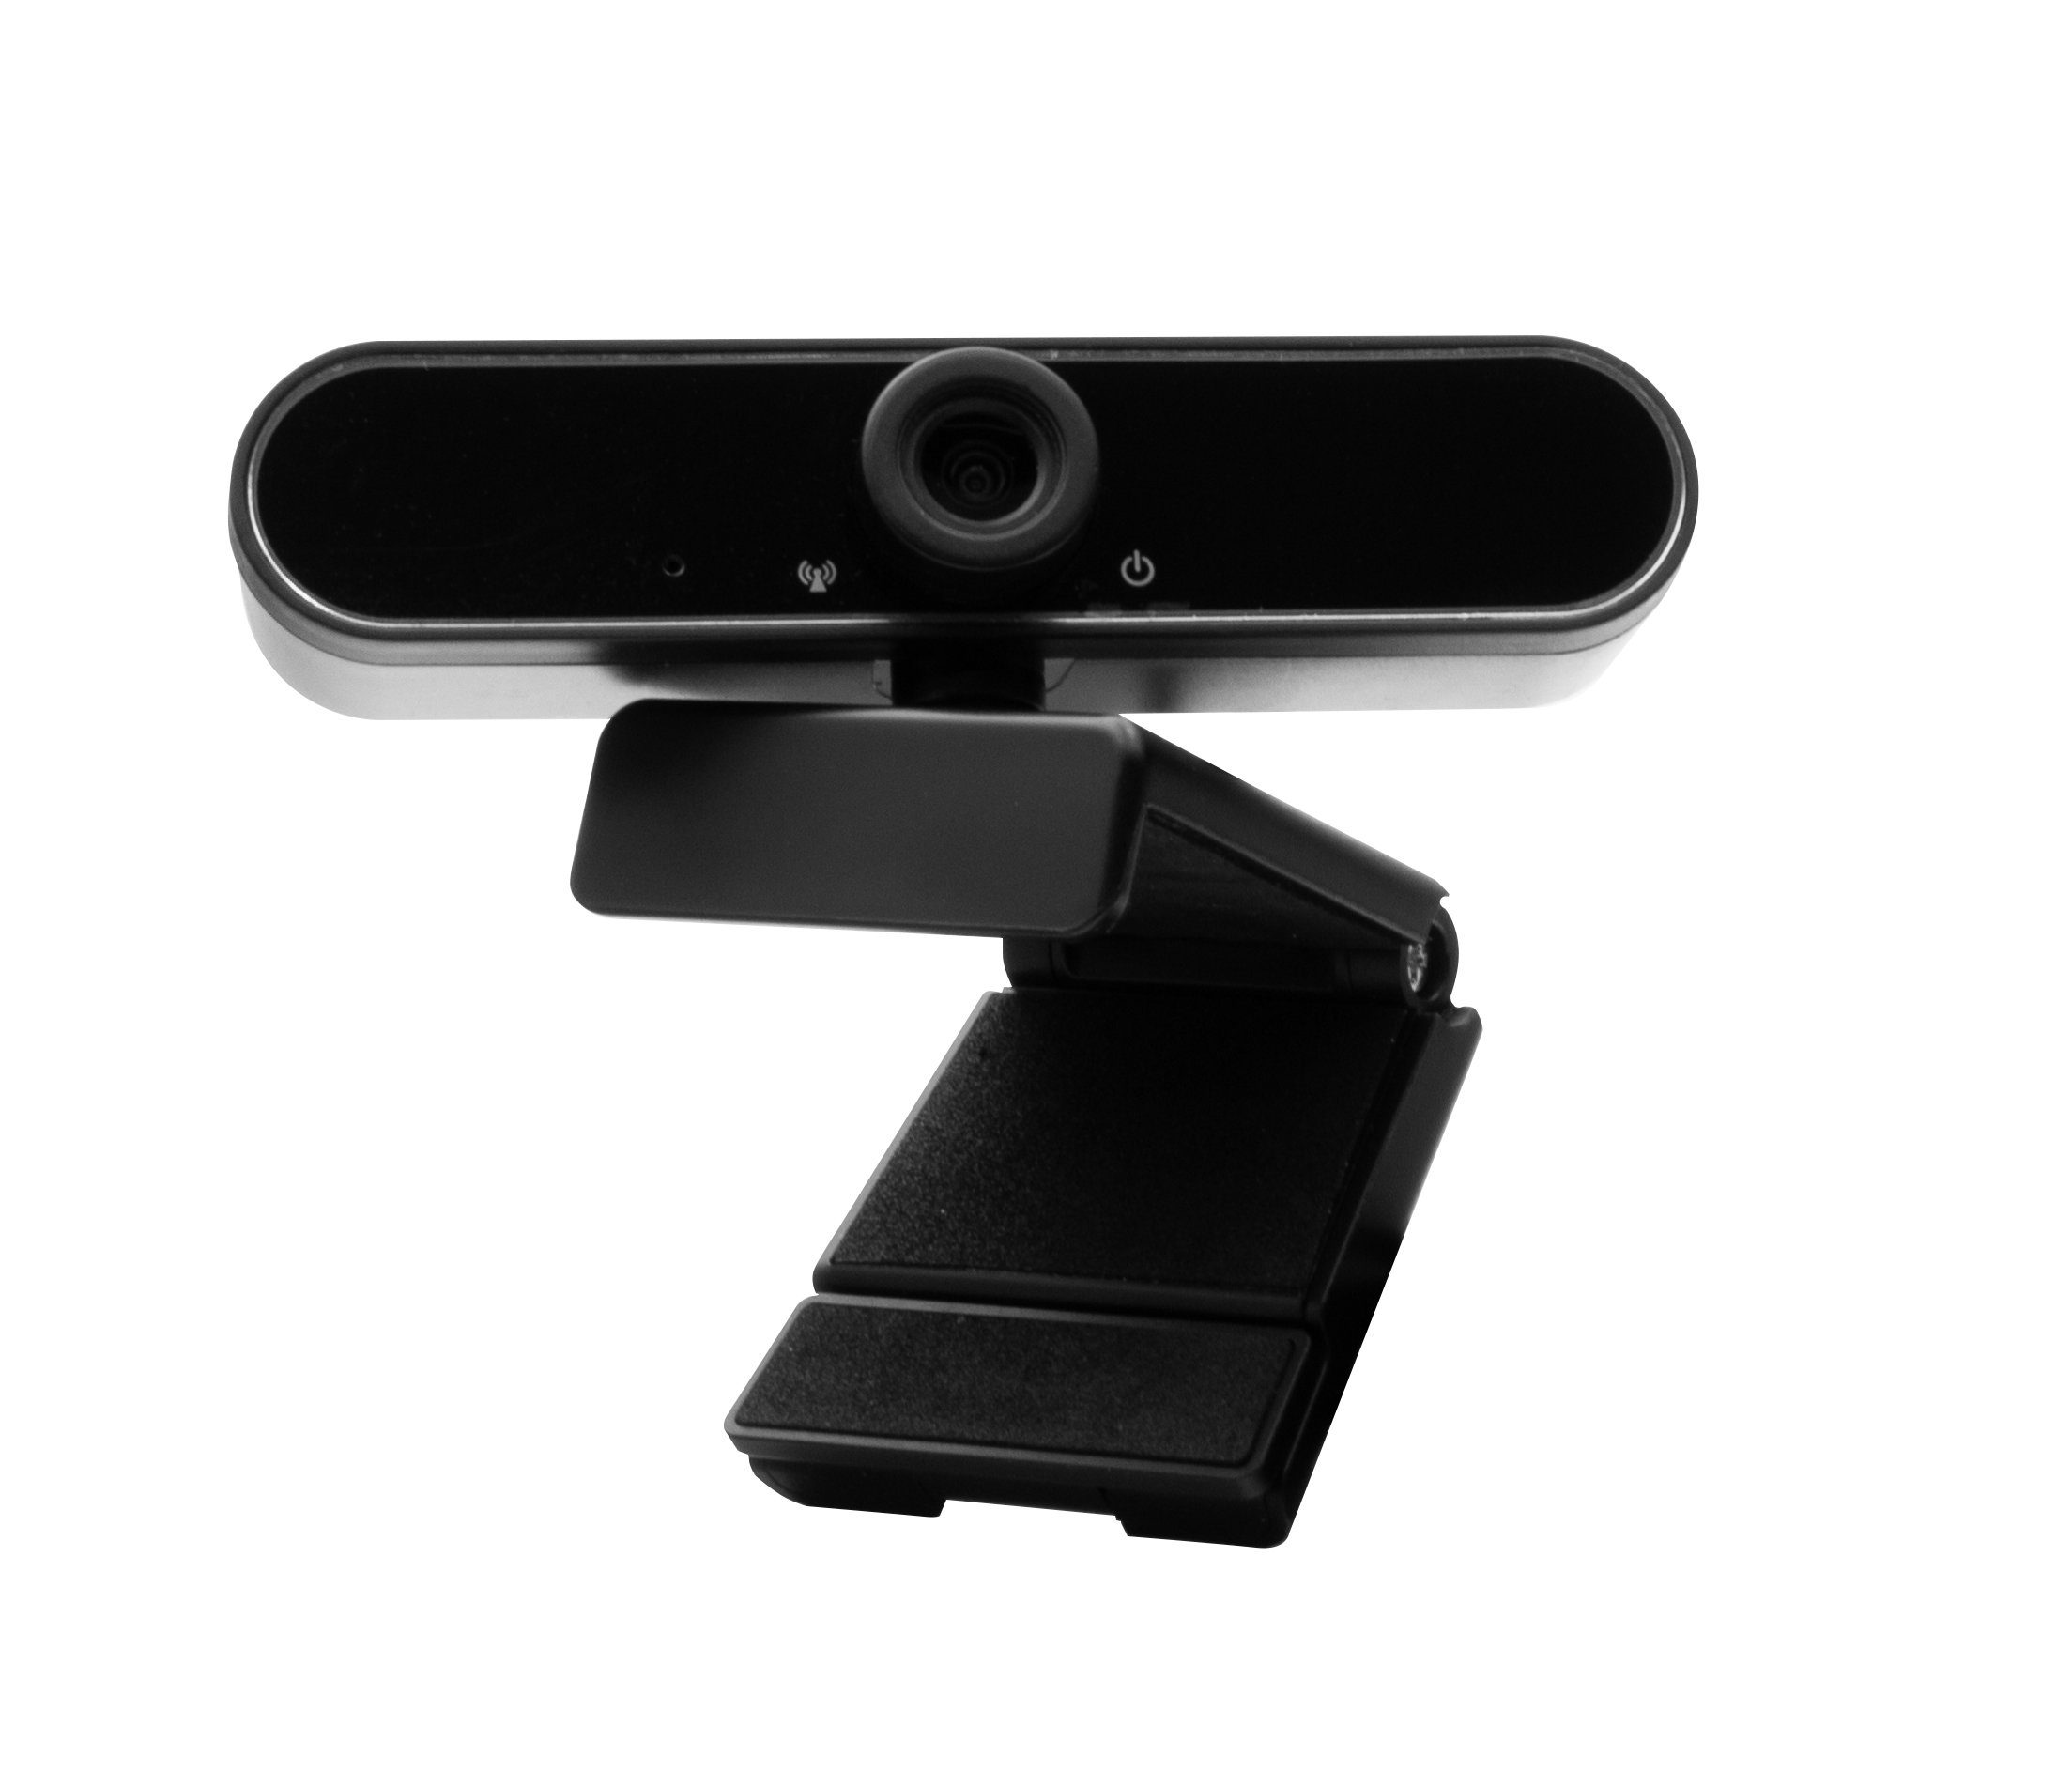 Hyrican Striker Streamer schwarz Mikrofon + ST-SM50 + + Collection Webcam Studio USB, DW1 Startup Headset kabelgebunden, Eingabegeräte-Set, ST-GH530 